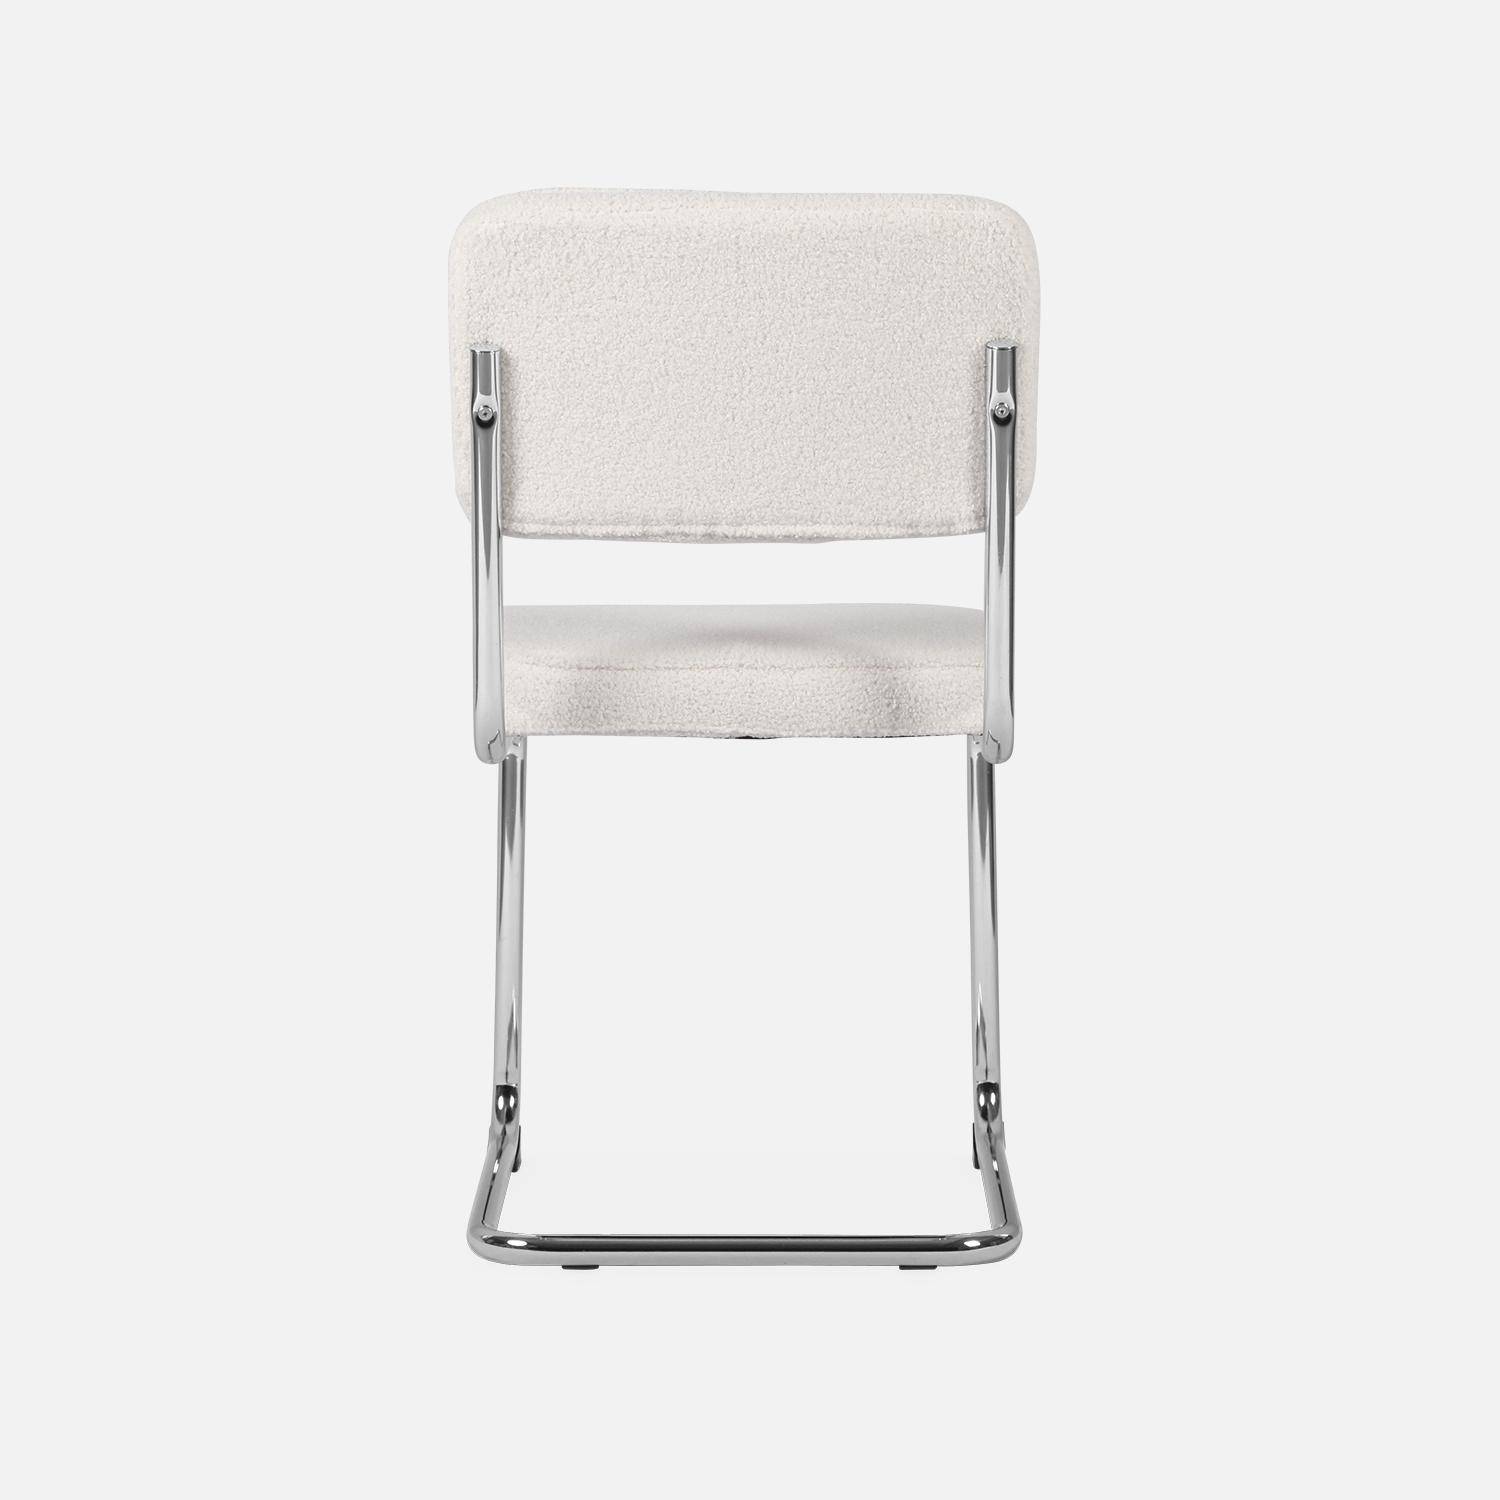 2 chaises cantilever - Maja - à bouclettes couleur crème , 46 x 54,5 x 84,5cm   Photo6